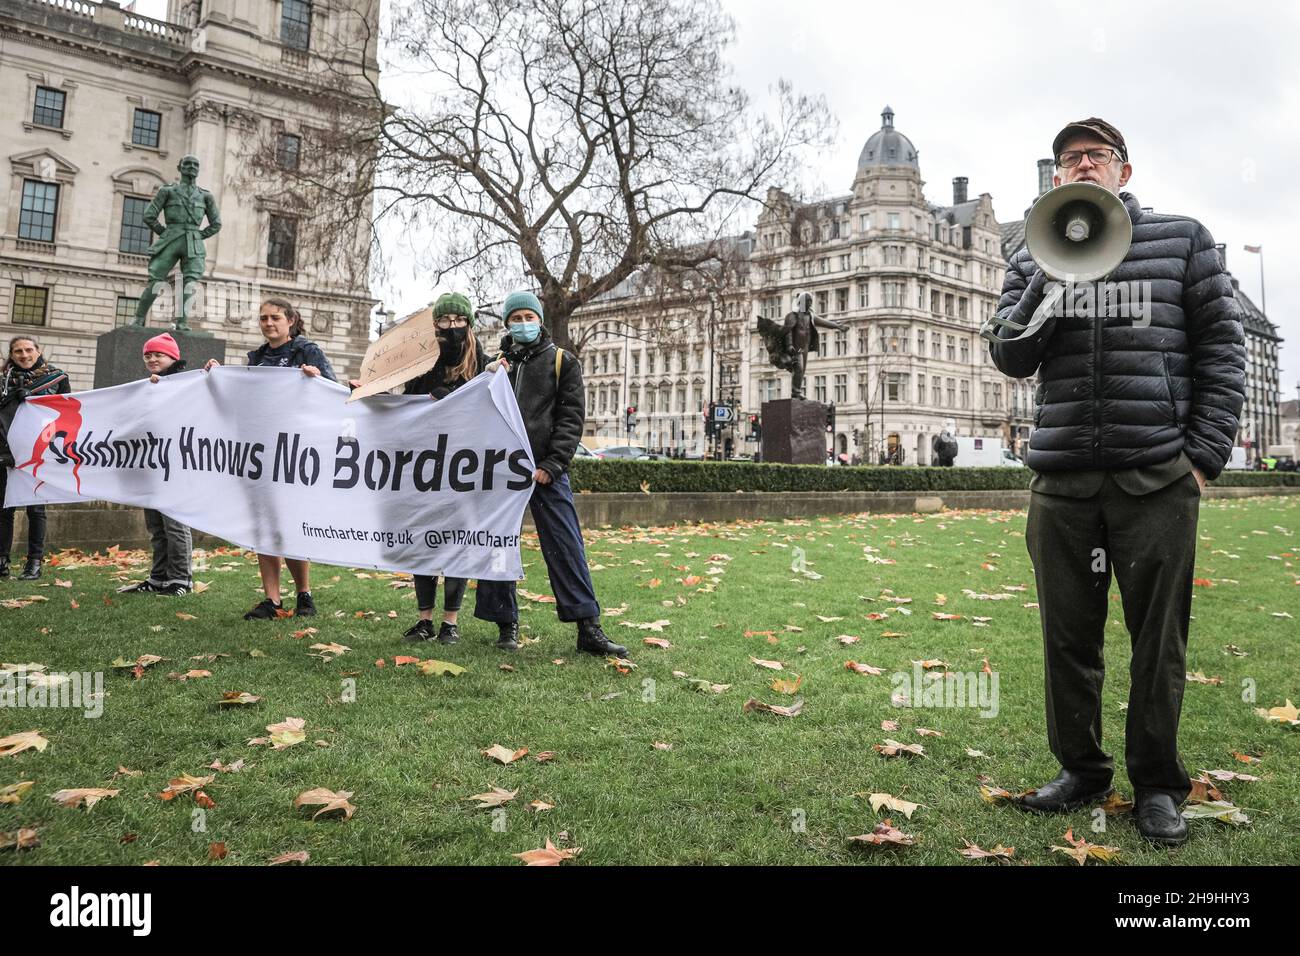 Westminster, Londres, Royaume-Uni.7 décembre 2021.L'ancien leader travailliste Jeremy Corby, député, prononce une allocution sur la place du Parlement.Little Amal, la marionnette géante qui représente une petite fille réfugiée, est de retour aujourd'hui dans le centre de Londres et hors du Parlement pour soutenir une protestation contre le projet de loi sur la nationalité et les frontières, qui pourrait potentiellement créer des obstacles aux réfugiés et autres demandeurs d'asile dans le système d'asile du Royaume-Uni.La marionnette avait été sur un long voyage de migrants de la Syrie au Royaume-Uni avec de nombreuses apparitions cet été et cet automne.Credit: Imagetraceur/Alamy Live News Banque D'Images